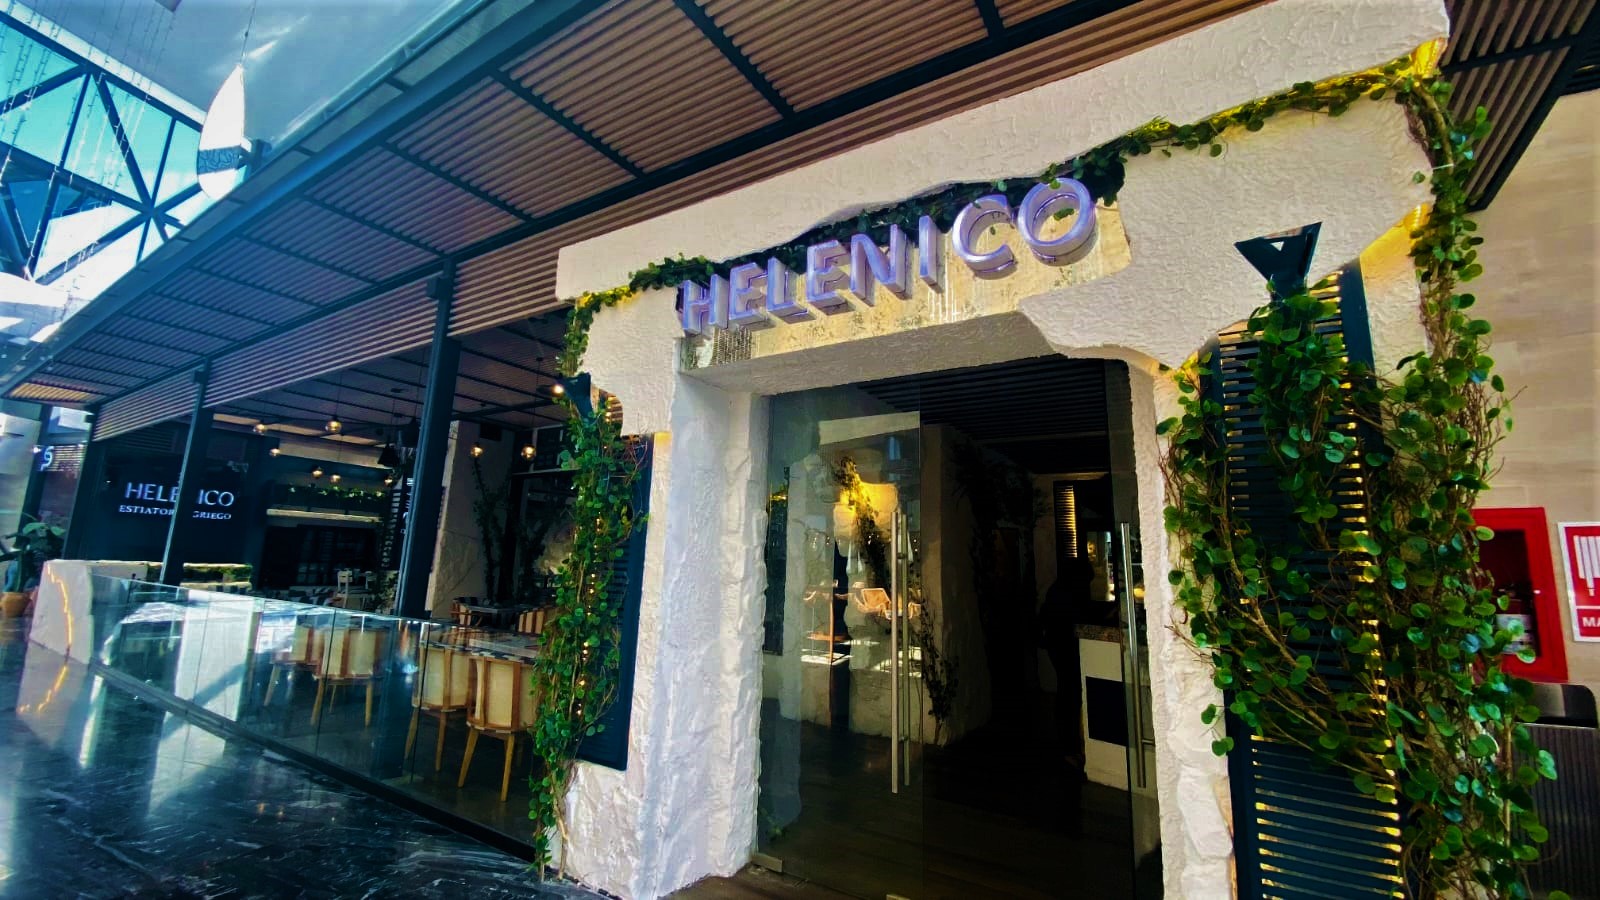 Helénico, restaurante de alta cocina griega en Guatemala, abre sus puertas en Décima Plaza